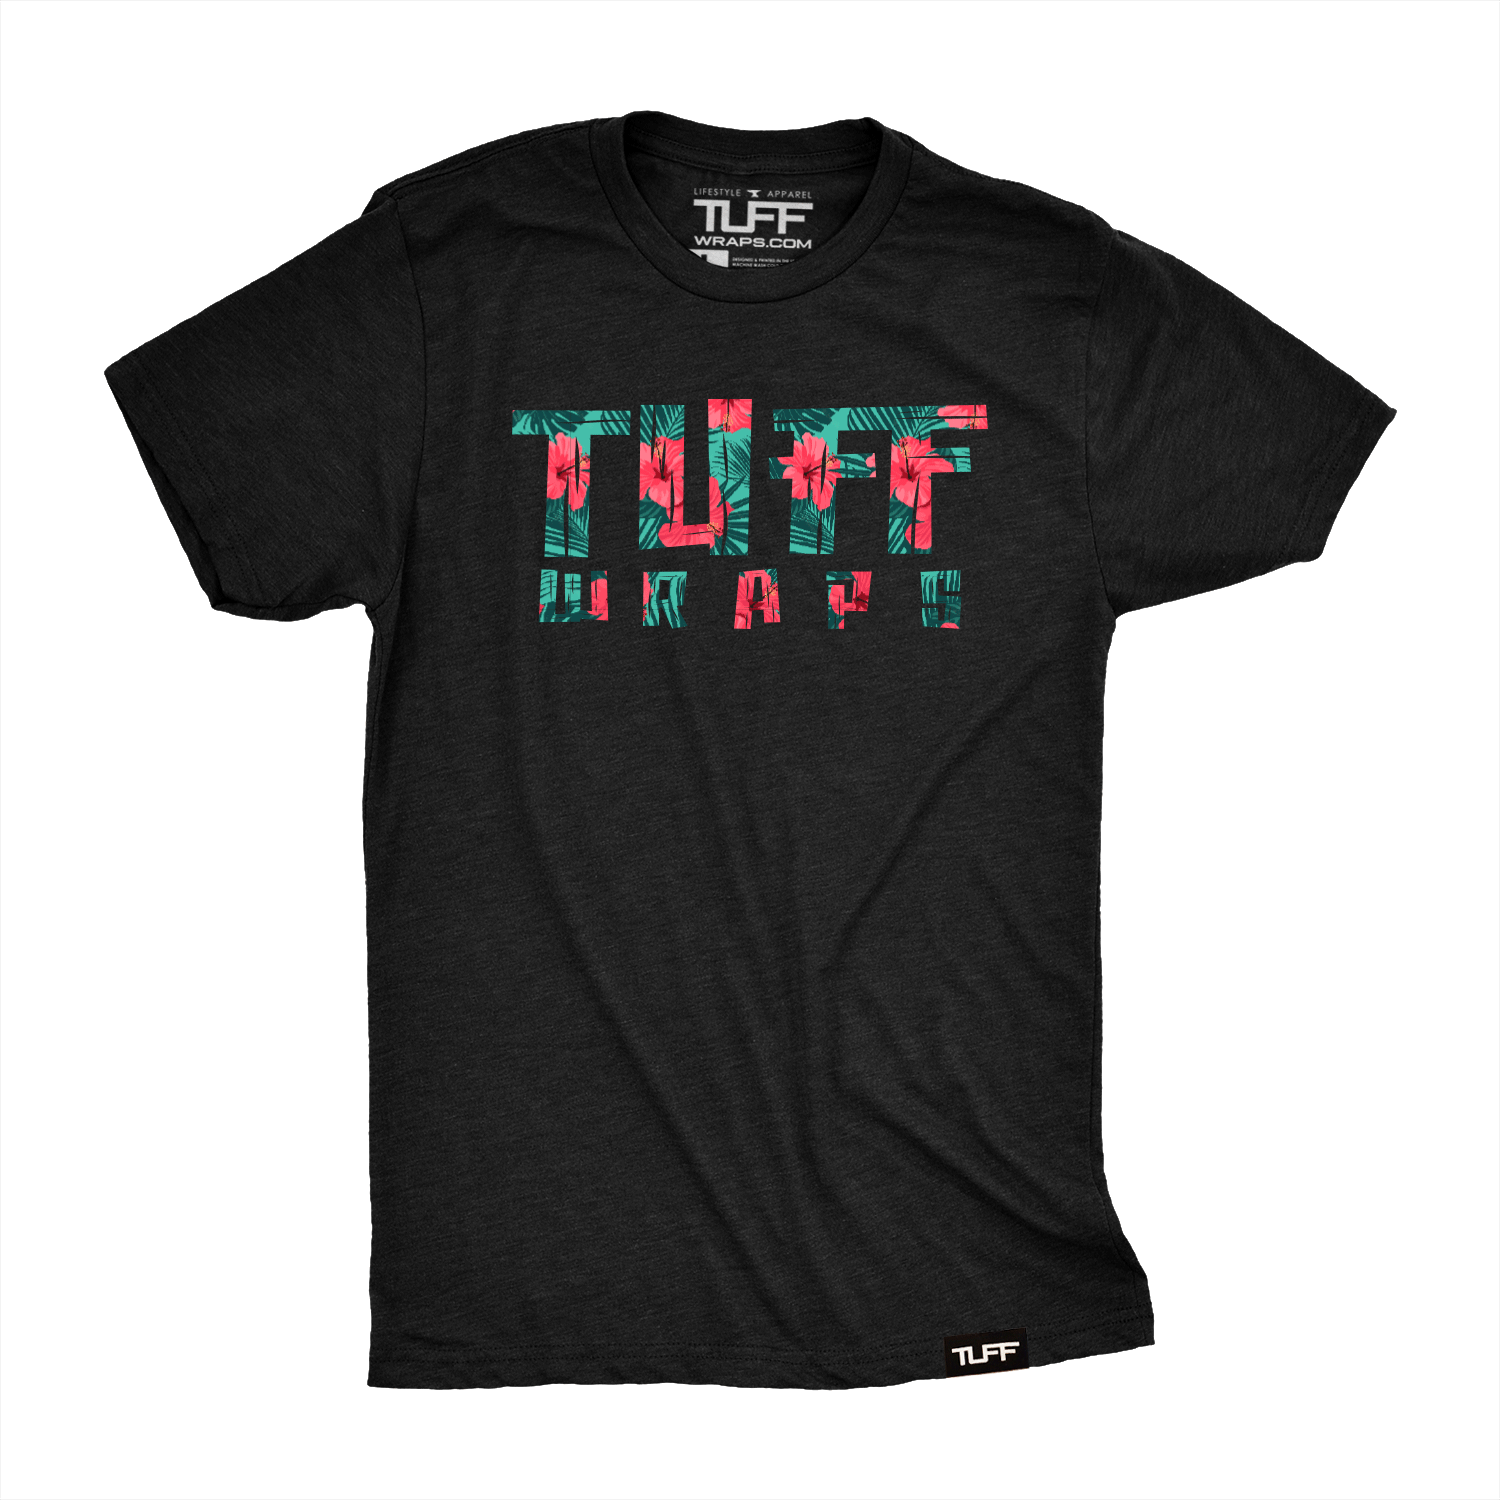 TUFFWRAPS Hawaii Tee T-shirt